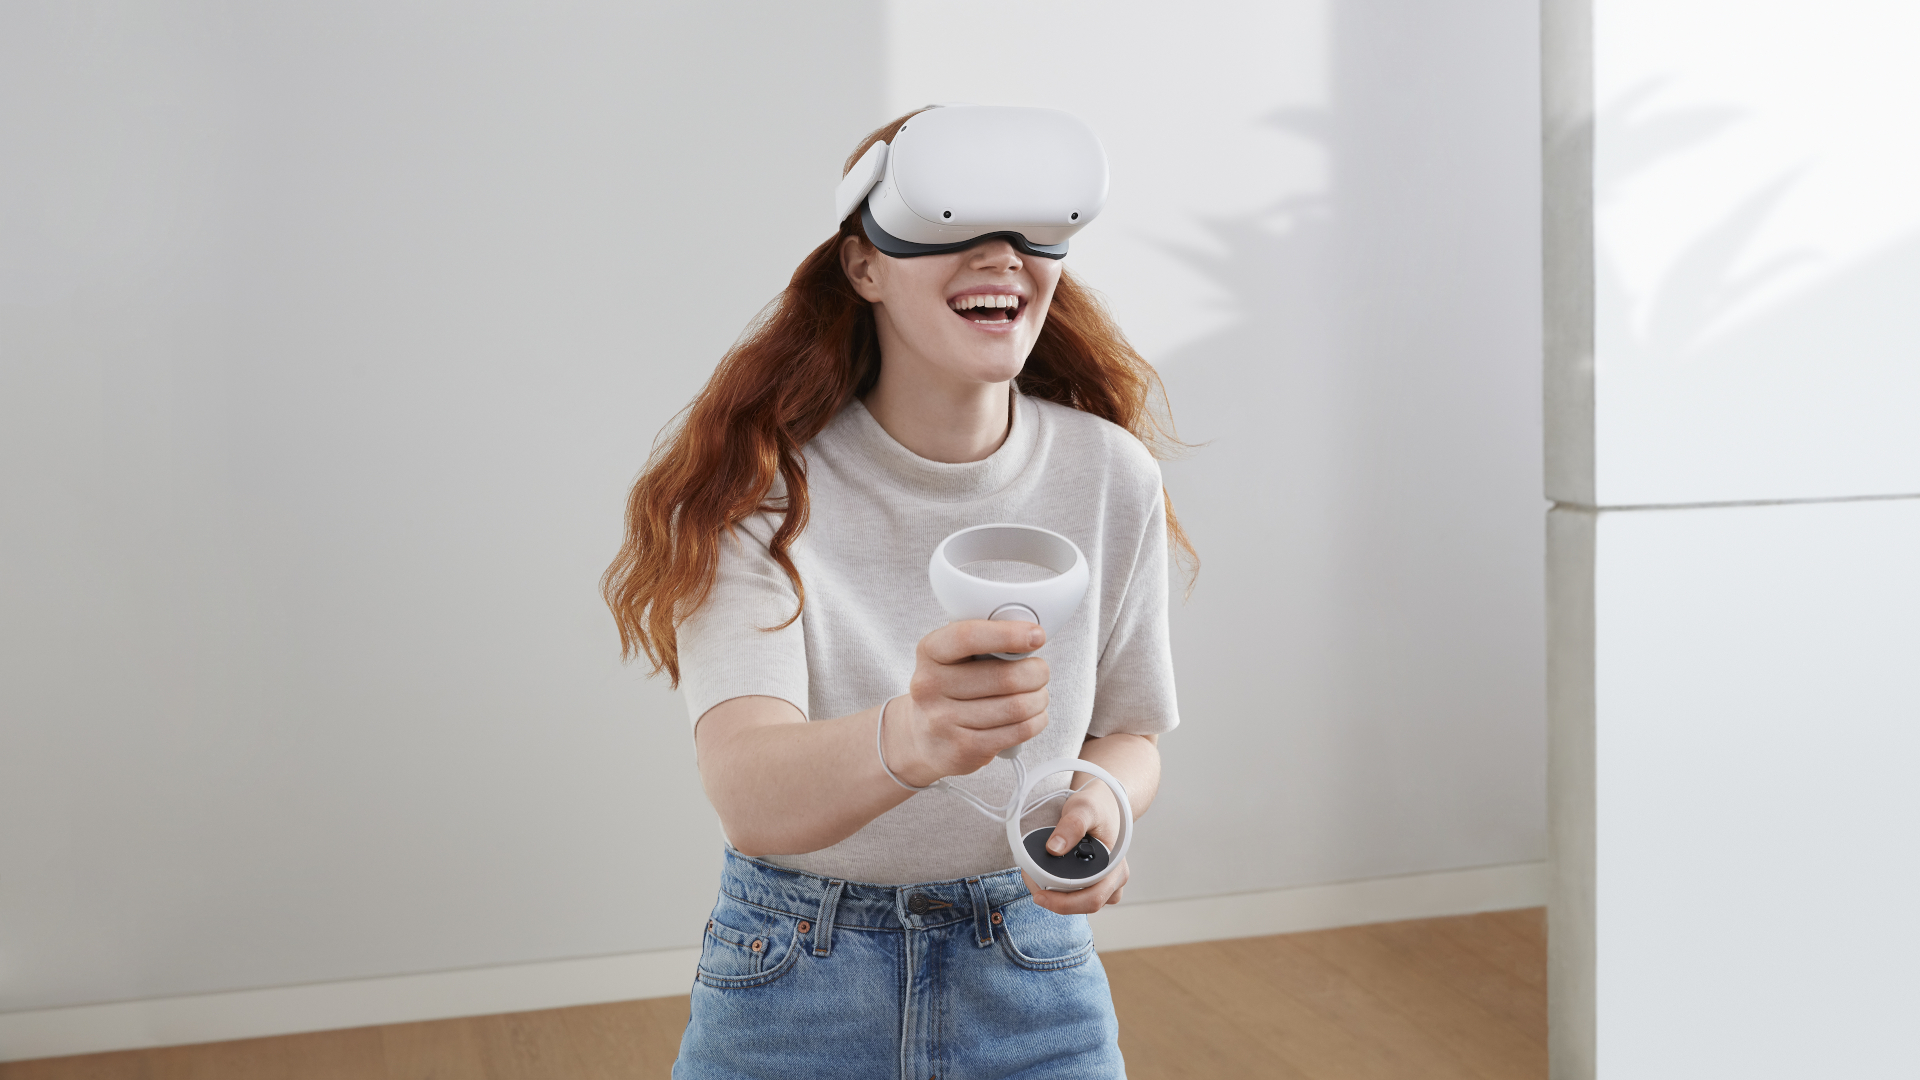 Best VR headsets 2022: Oculus Quest 2, Valve Index, PSVR, and more...